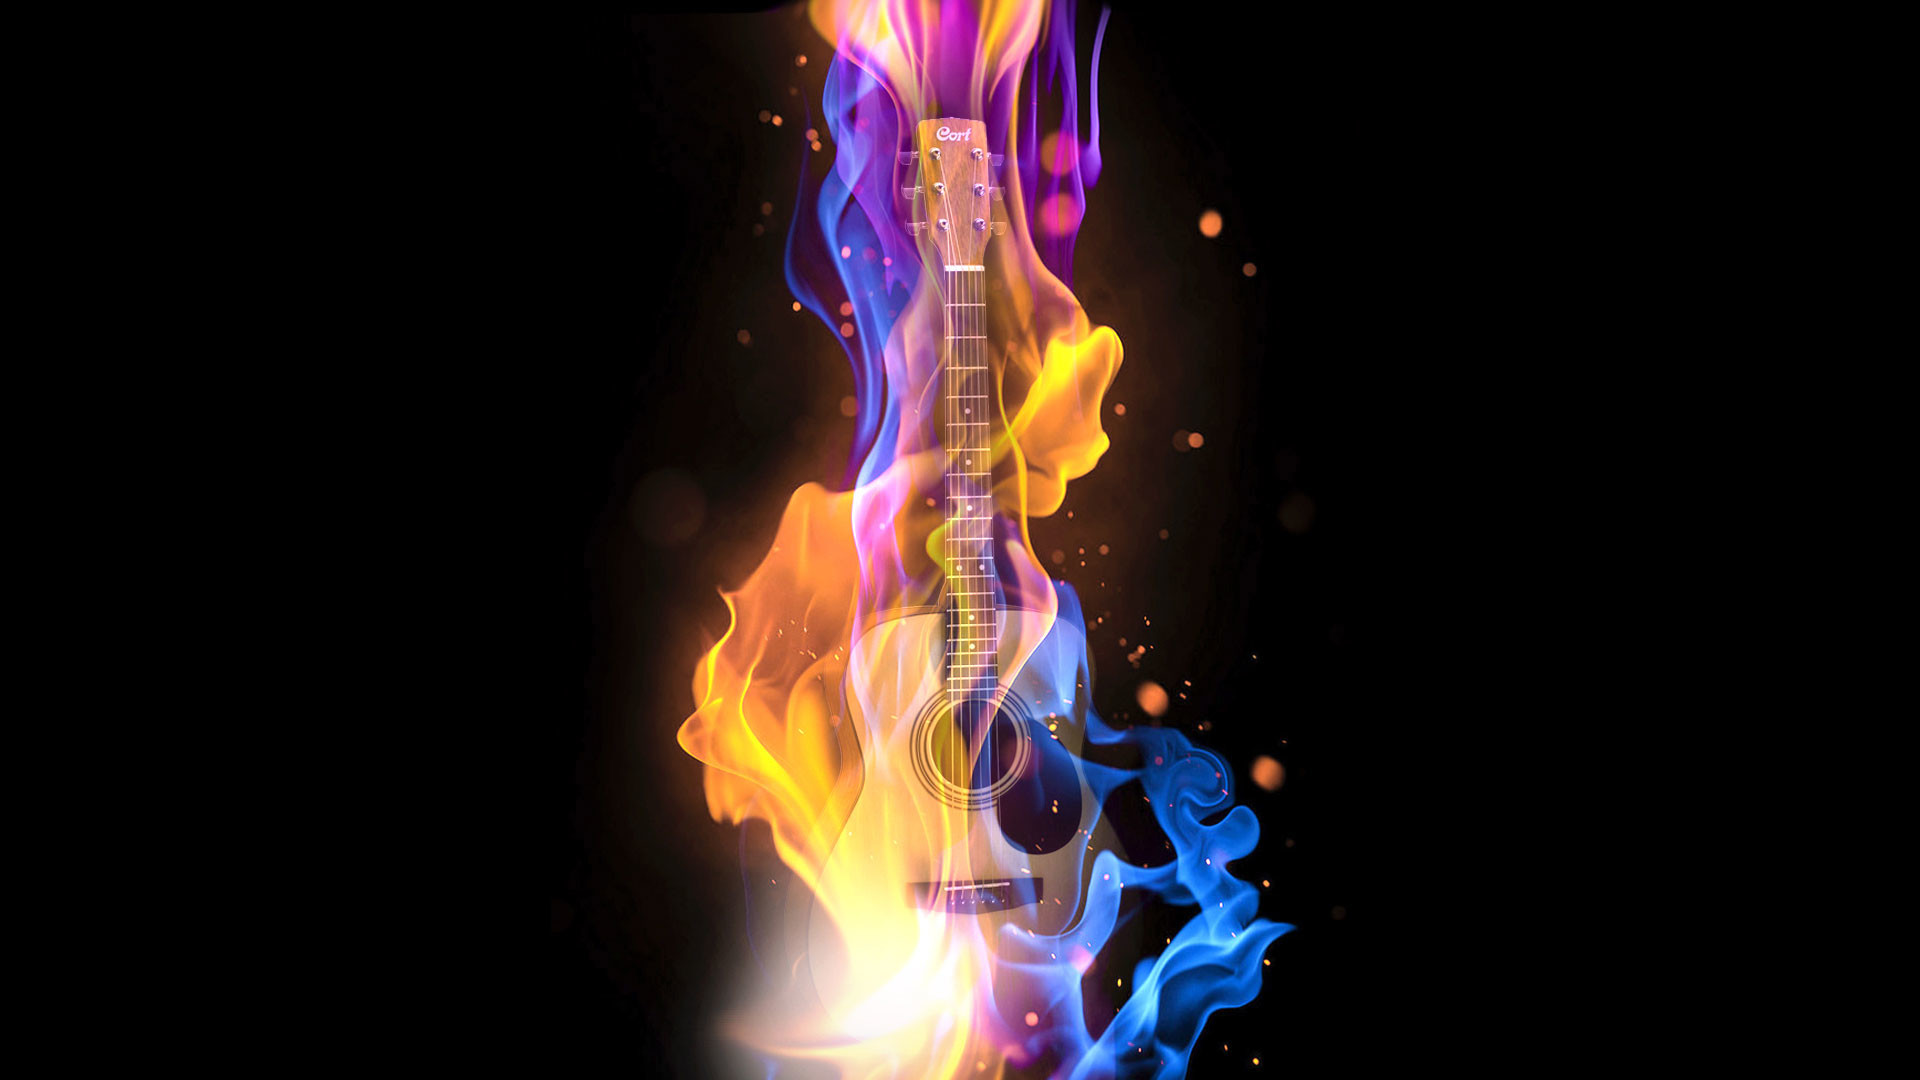 1920x1080 hd pics photos music abstract guitar fire digital art desktop background  wallpaper